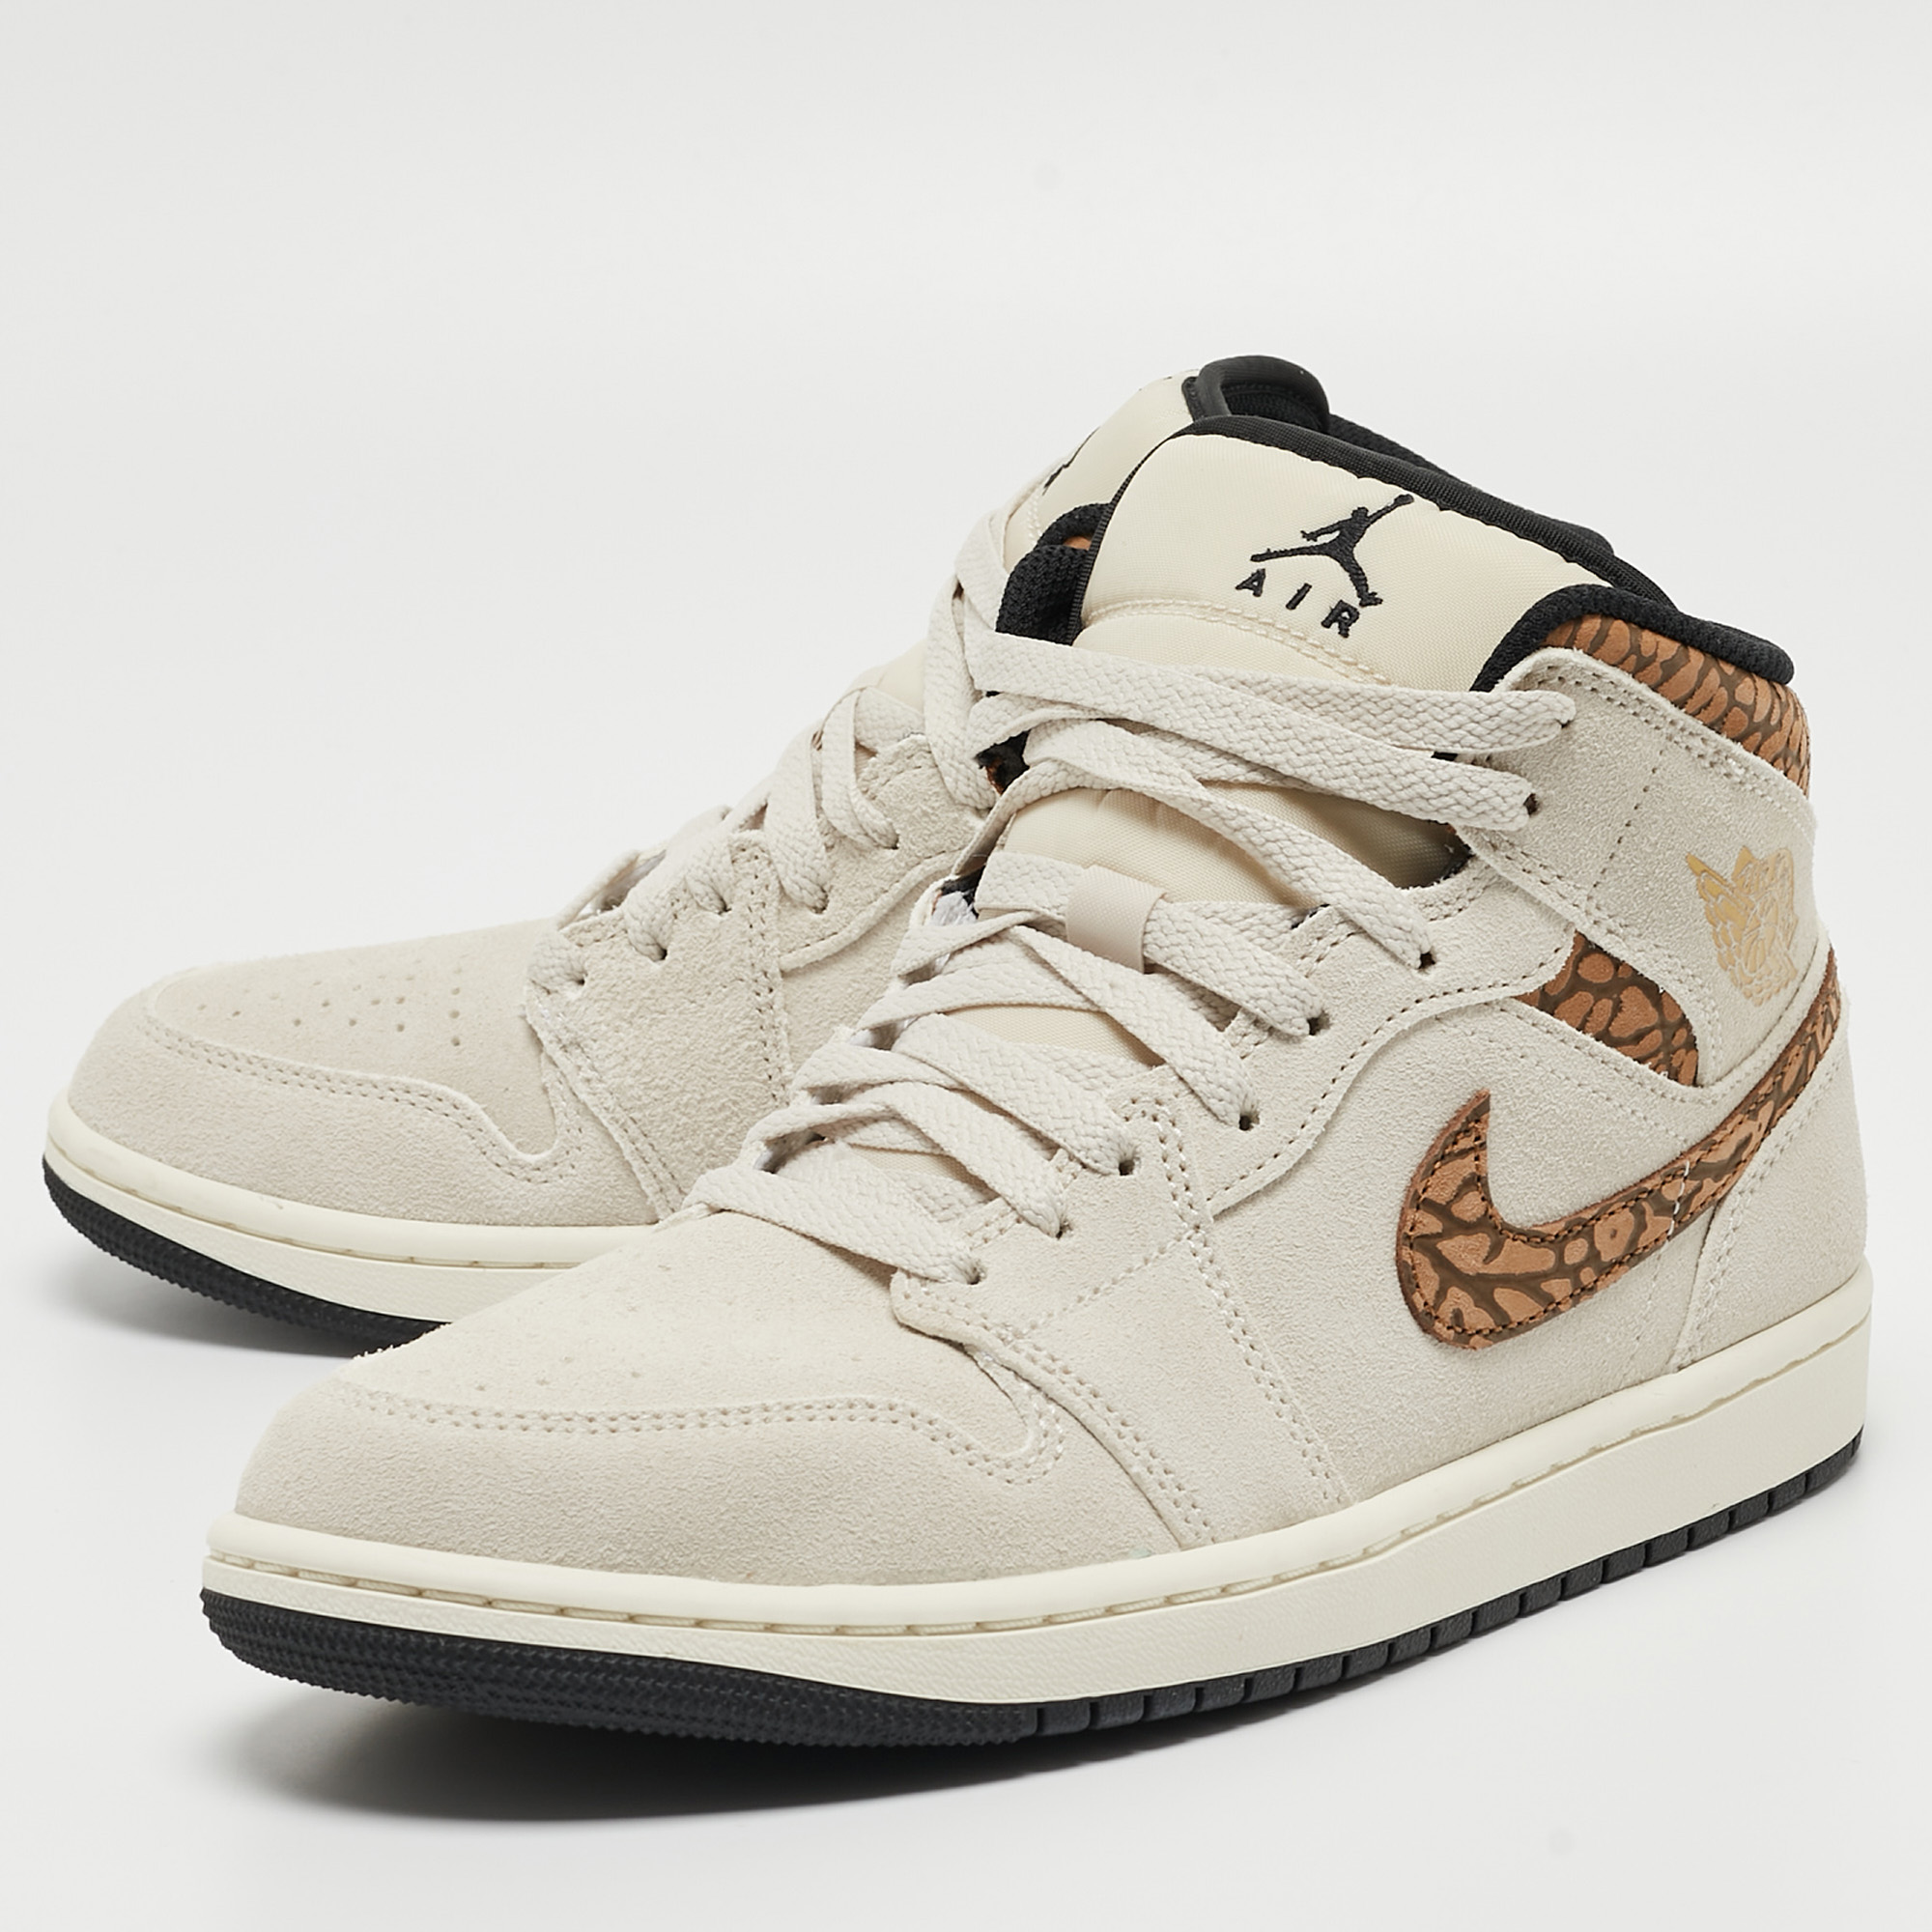 

Air Jordan Cream/Brown Suede Jordan 1 Mid SE Brown Elephant Sneakers Size